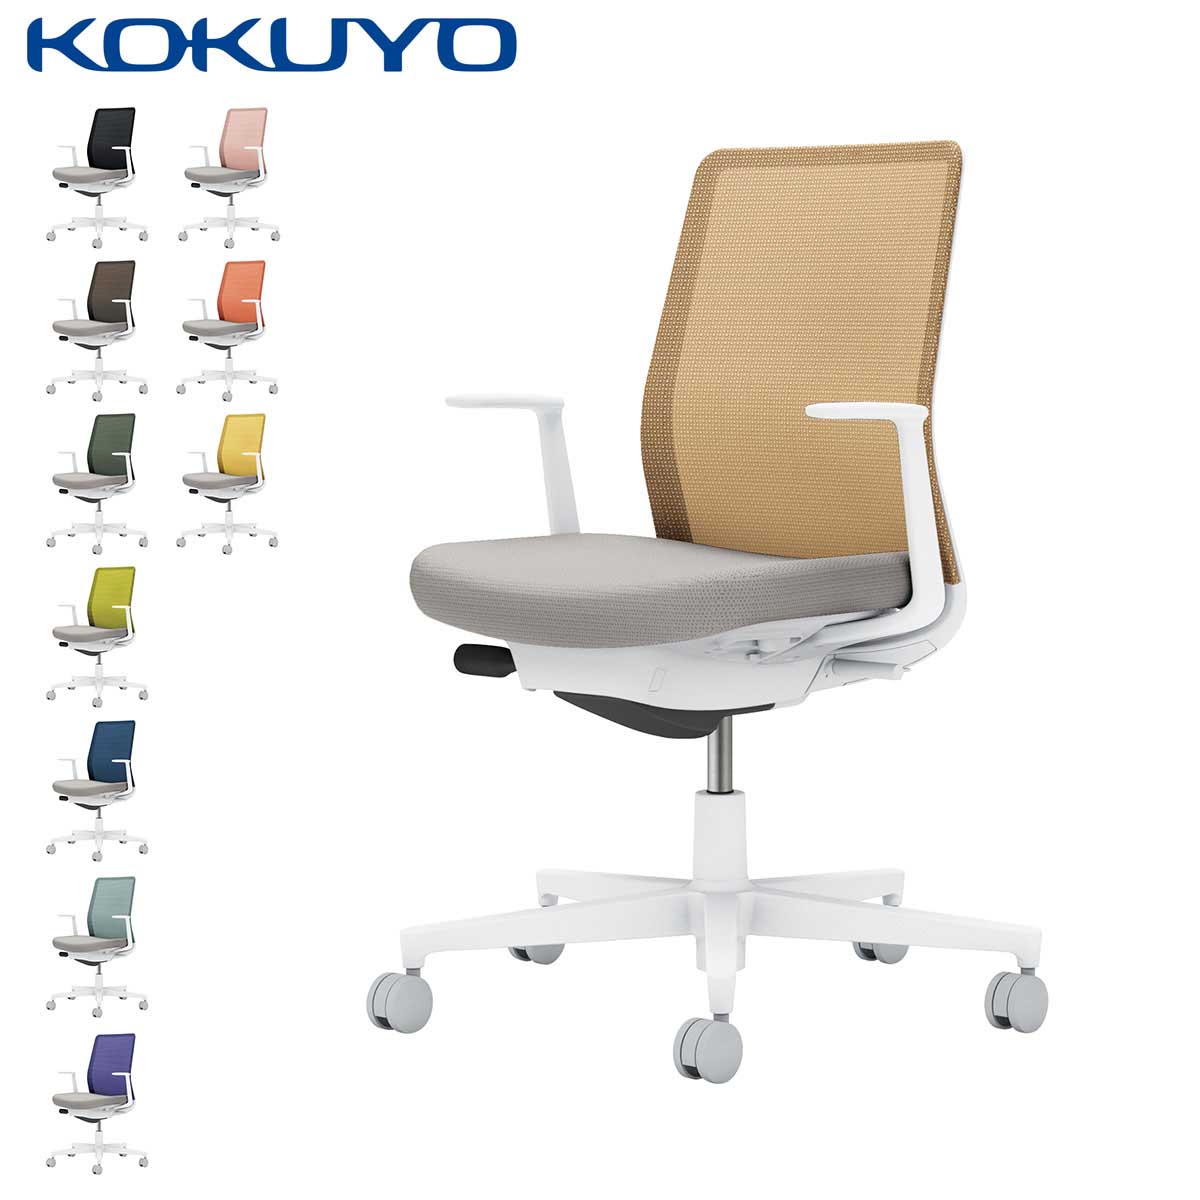 コクヨ デスクチェア オフィスチェア 椅子 Monet モネット C03-W110 背メッシュ L型肘 本体/脚ホワイト